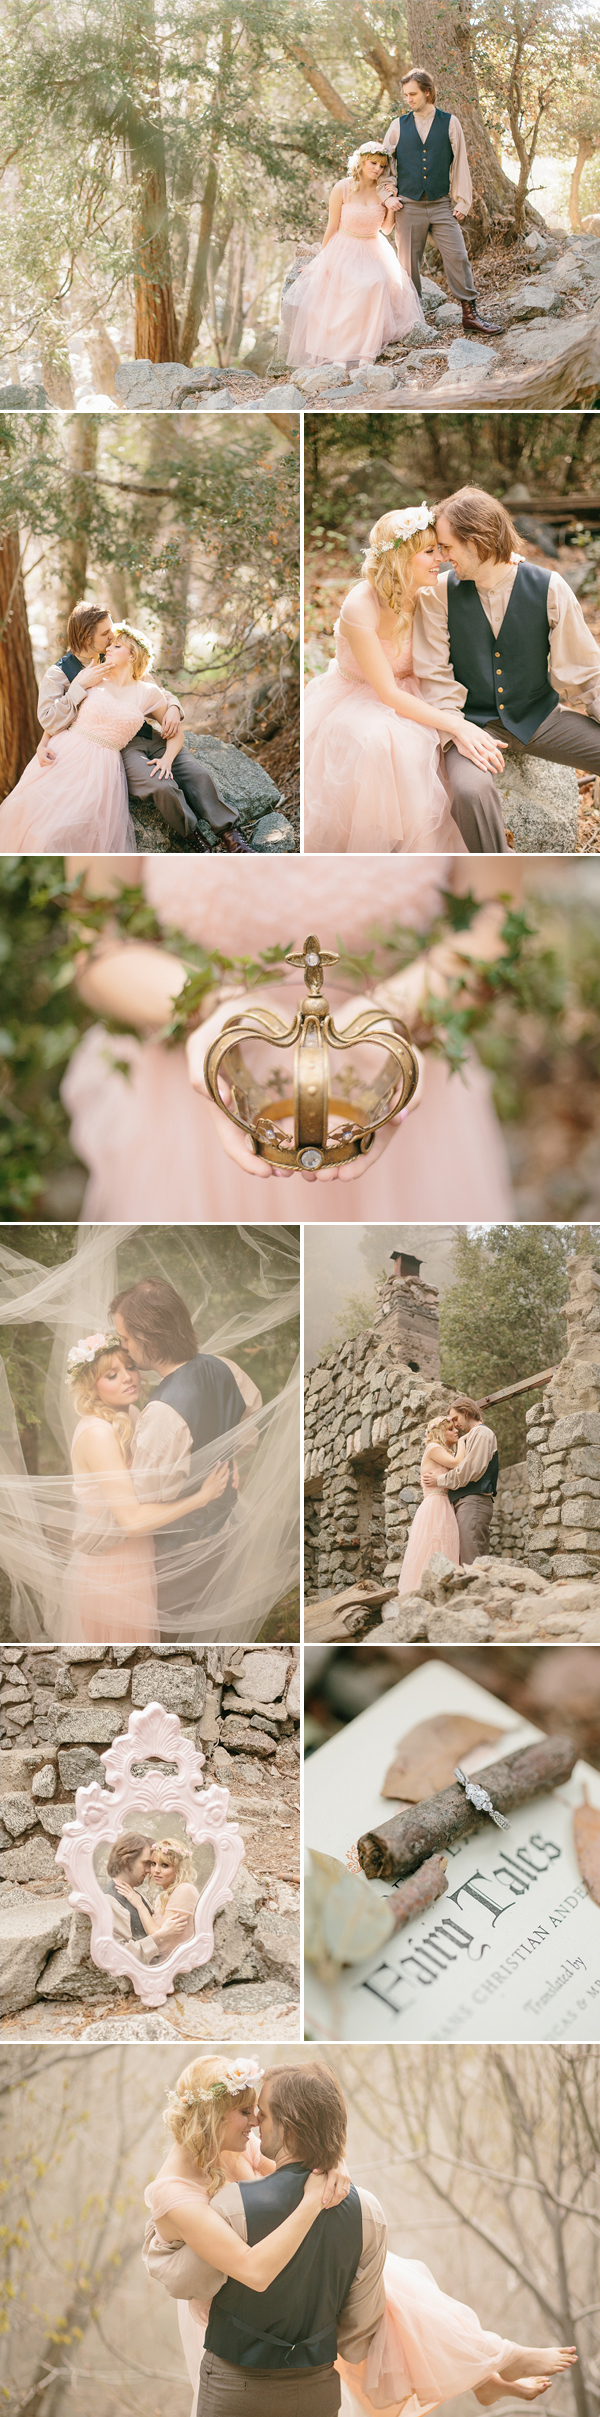 Enchanted Fairytale Engagement photo